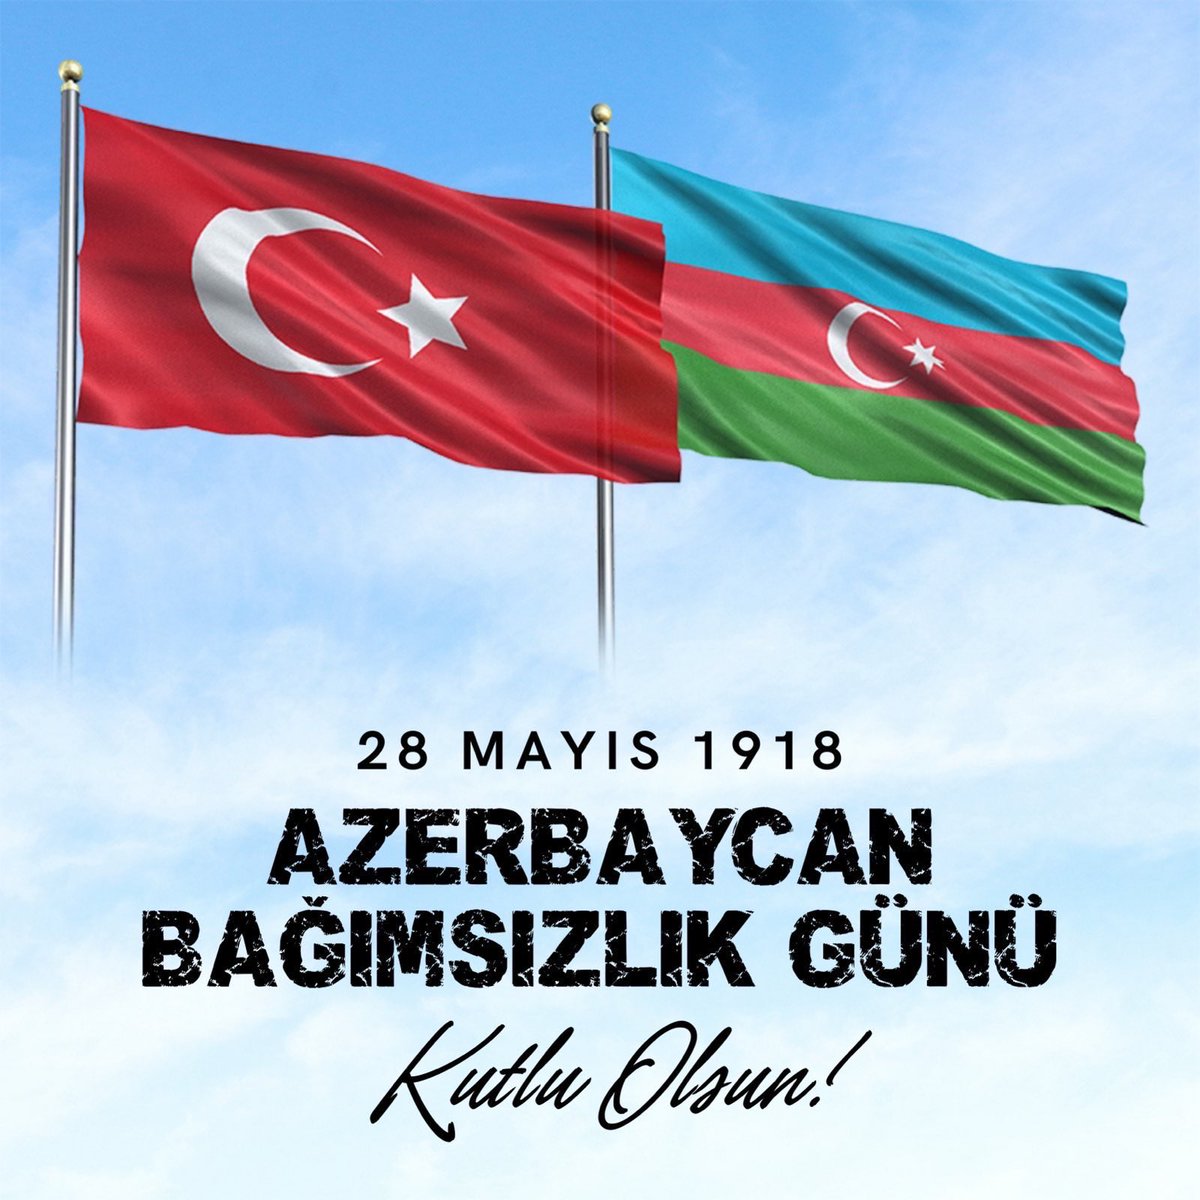 Can Azerbaycan'ın 28 Mayıs Bağımsızlık Günü'nü kutluyorum.

Kardeş ülke Azerbaycan ile sarsılmaz kardeşliğimiz sonsuza kadar sürecek, her platformdaki birlik ve beraberliğimiz bölgede barış ve istikrarı güçlendirmeye devam edecektir. 🇹🇷🤝🇦🇿